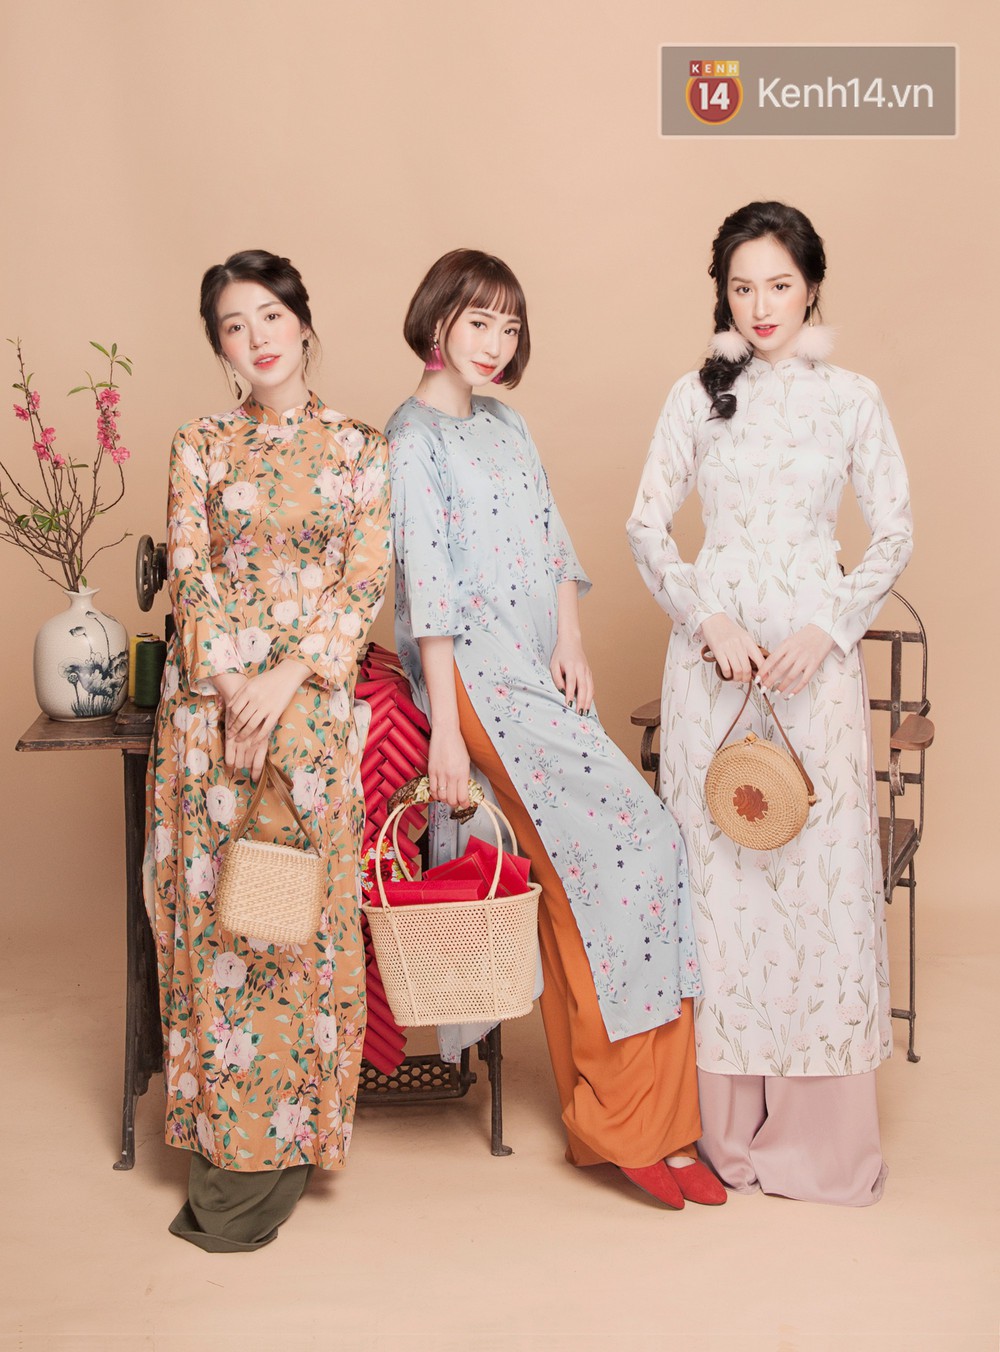 Tết này mặc áo dài: Sun HT, Mẫn Tiên, Lê Vi diện 15 mẫu áo dài cực xinh mà hẳn là bạn cũng đang cần tìm mua chúng - Ảnh 6.